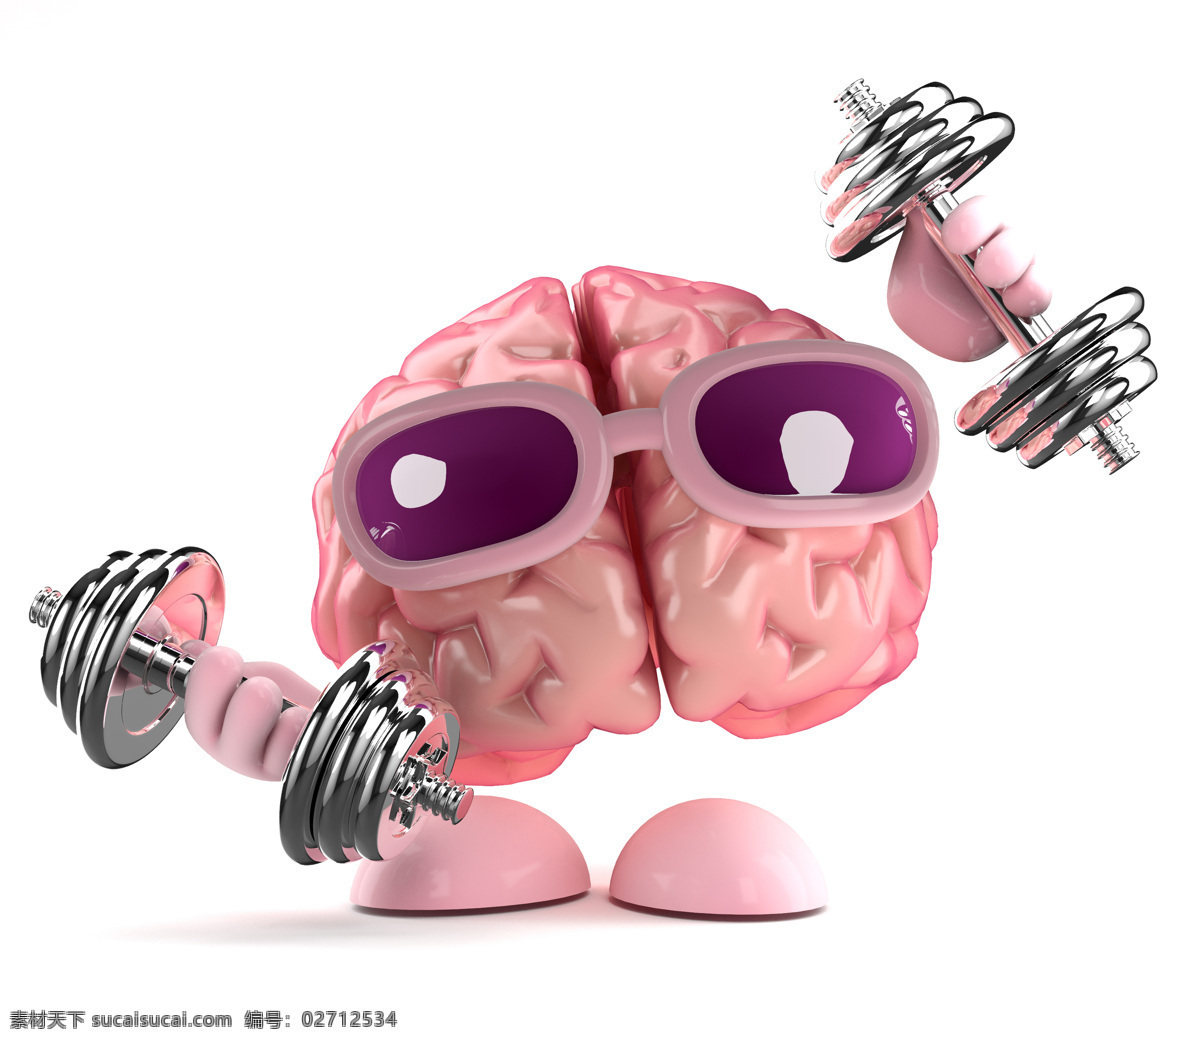 大脑 漫画 健身 哑铃 人类大脑 大脑漫画 大脑设计 卡通大脑 大脑人物 虚拟人物 儿童卡通 卡通动画 脑细胞 脑容量 太阳镜 动漫动画